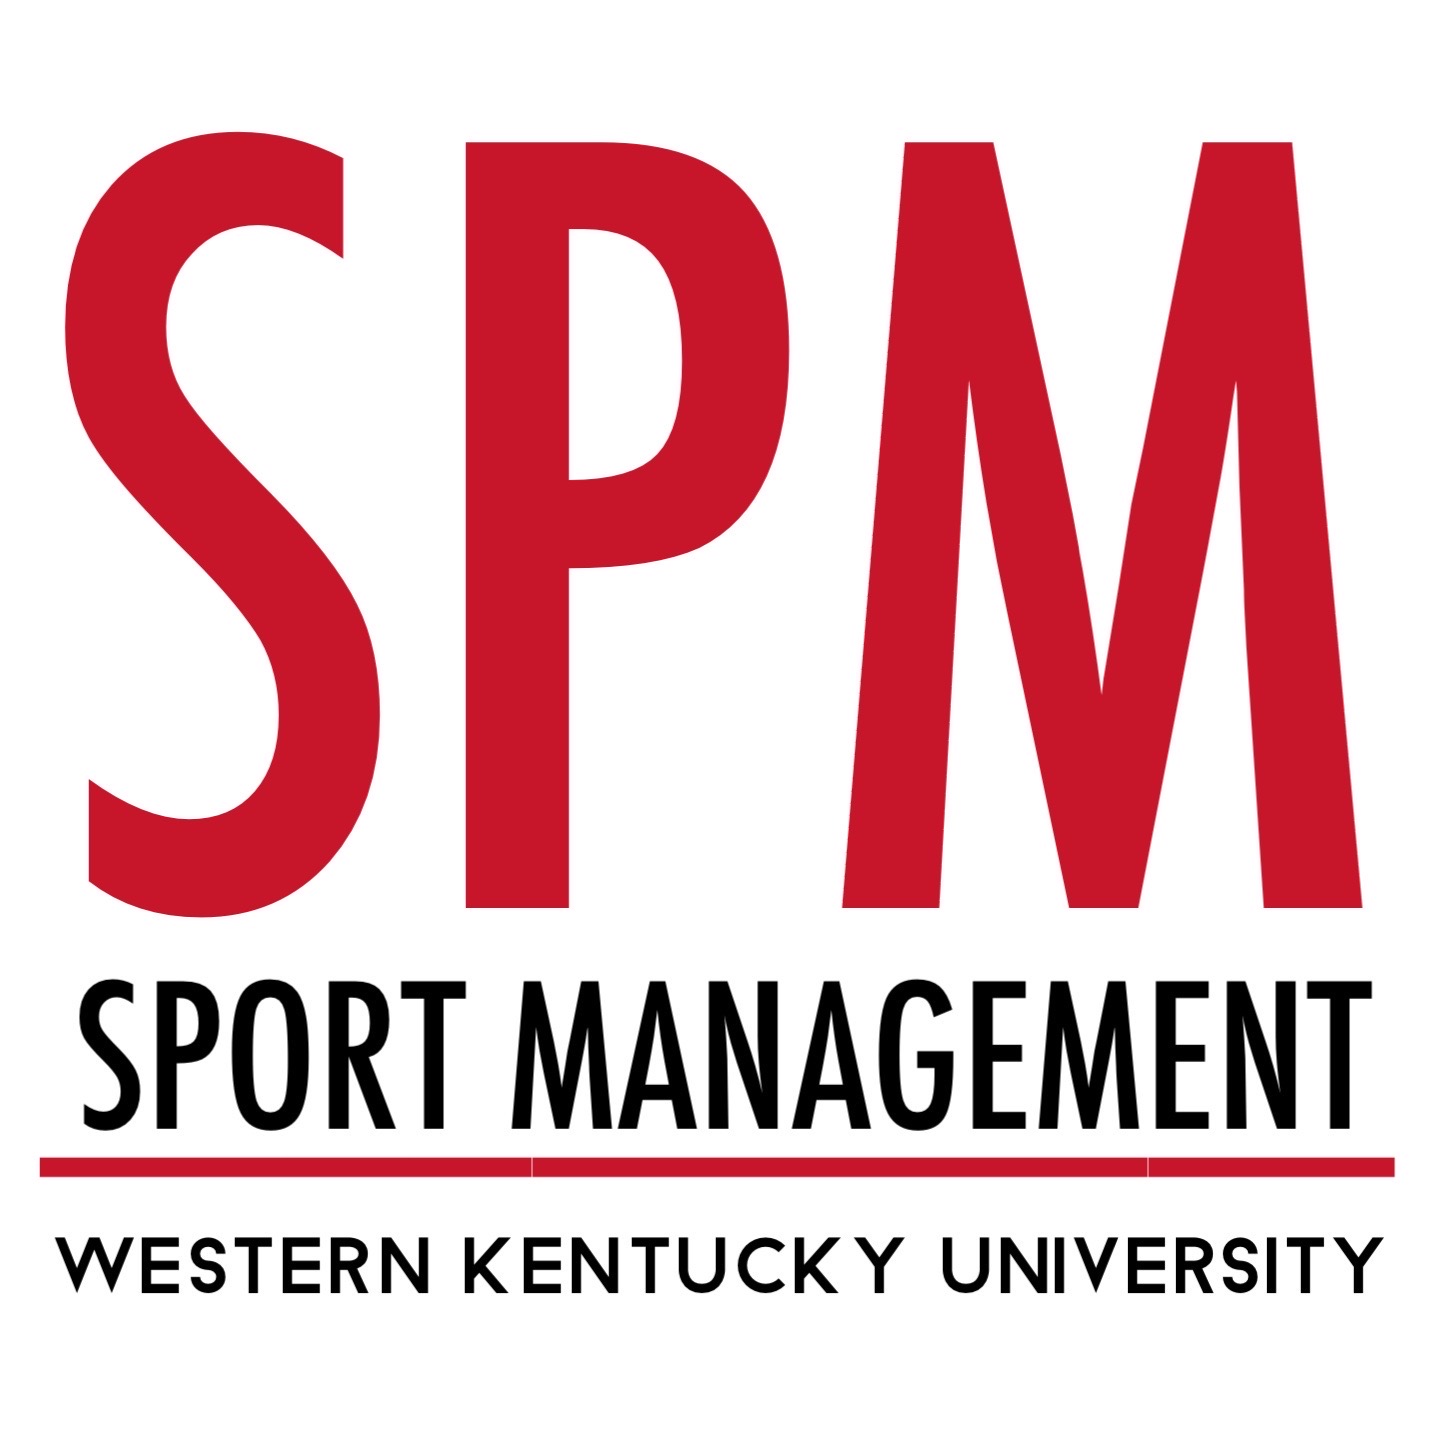 SPM Logo